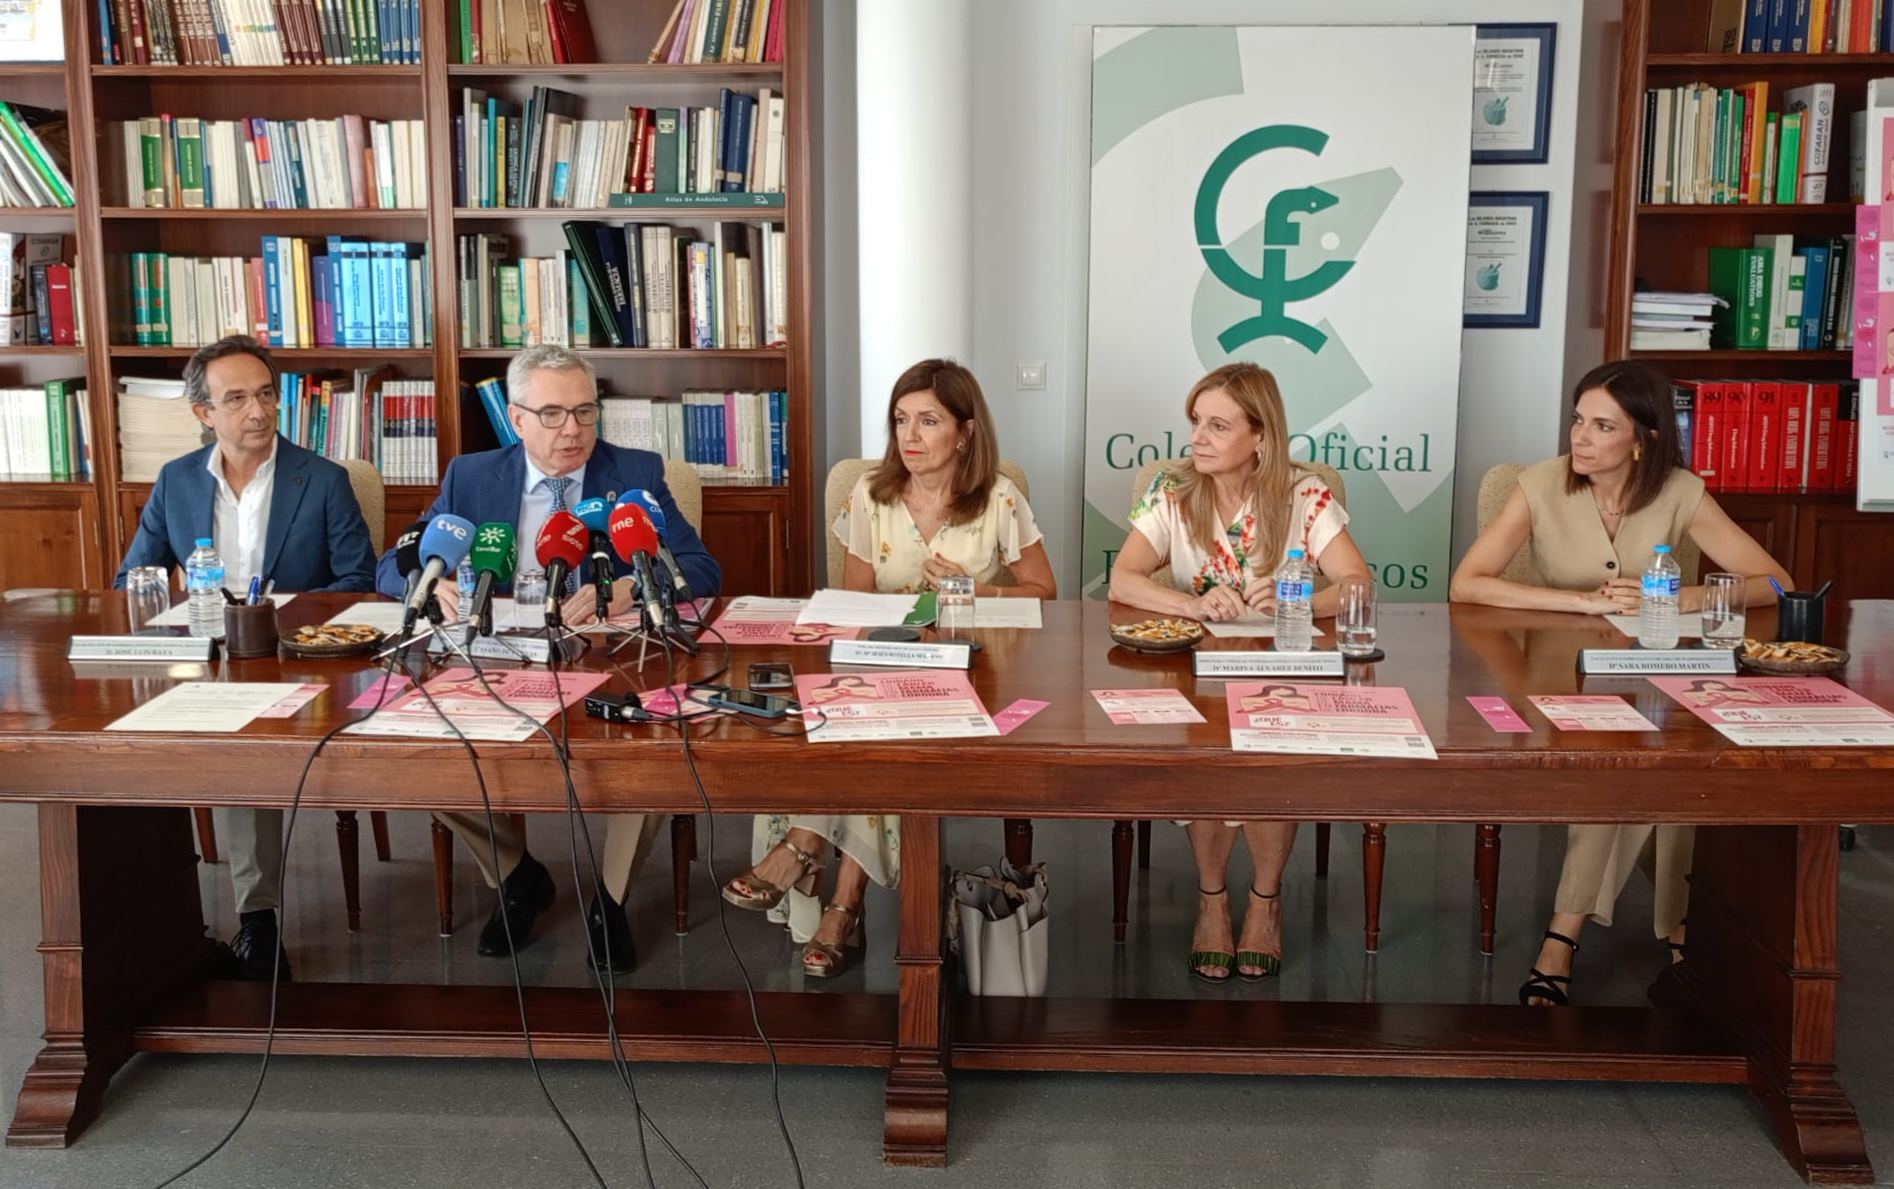 Nota de prensa - Las farmacias de la provincia de Córdoba animan a la participación en el cribado de cáncer de mama